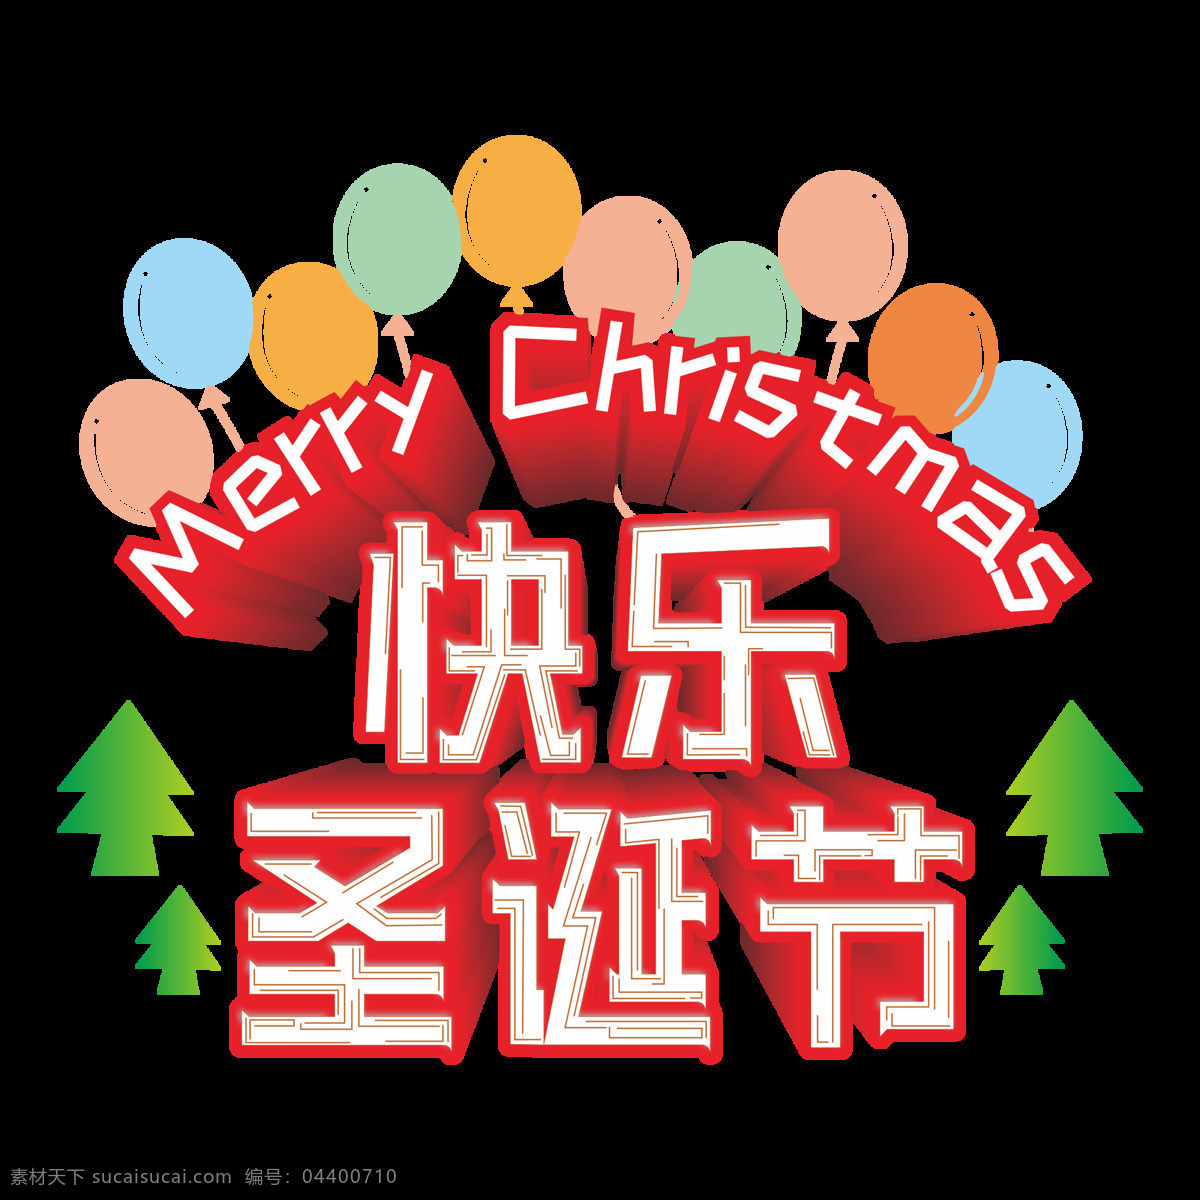 卡通 红色 快乐 圣诞节 艺术 字 立体 元素 立体字 设计元素 气球 快乐圣诞节 艺术字 原创商用 主题字